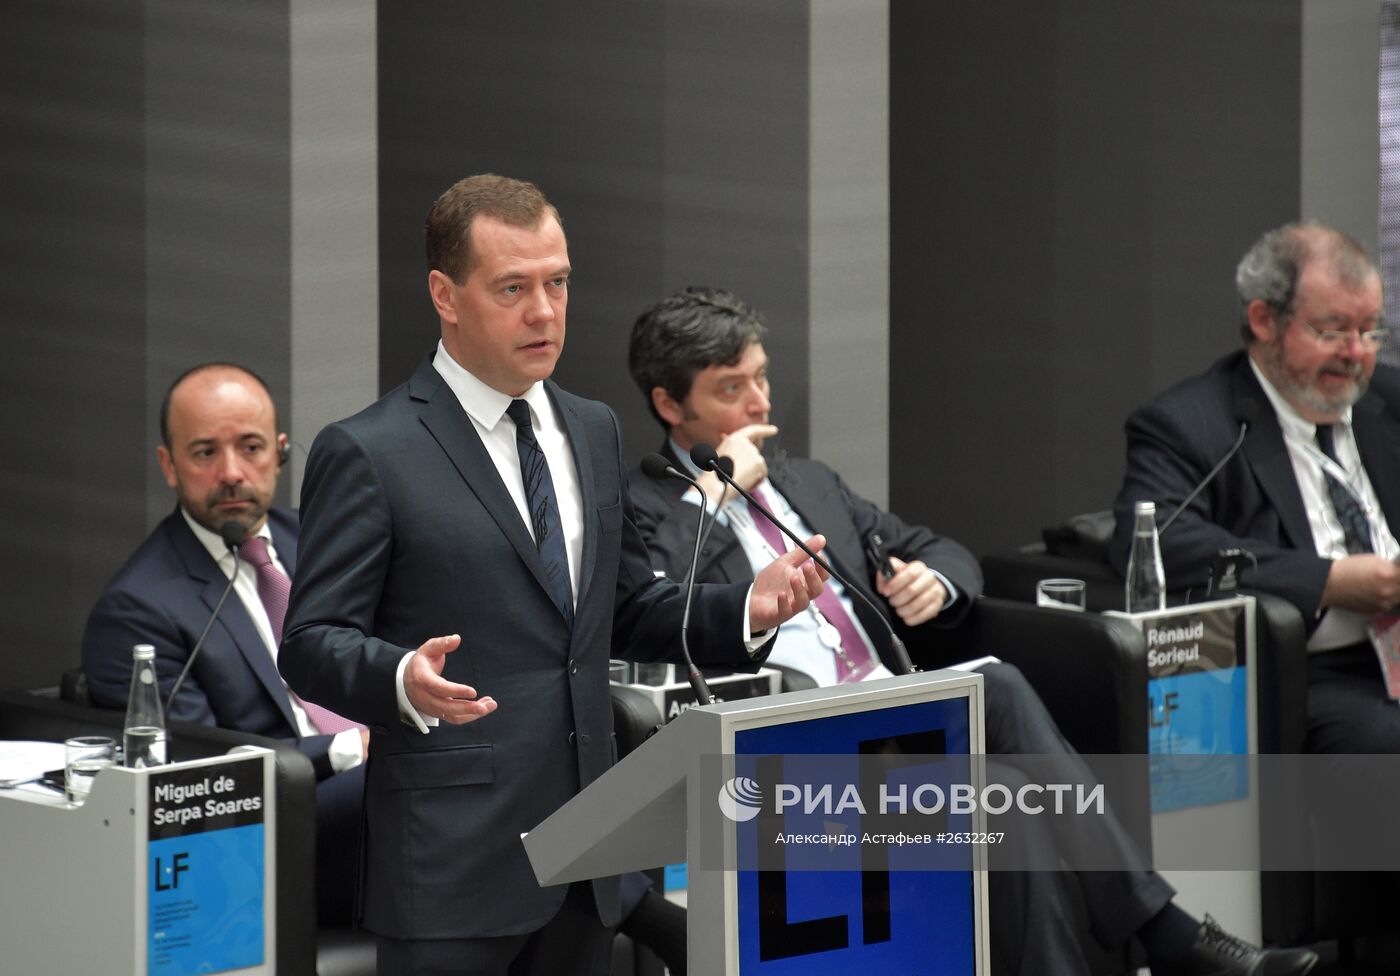 Рабочая поездка премьер-министра РФ Д.Медведева в Северо-Западный федеральный округ